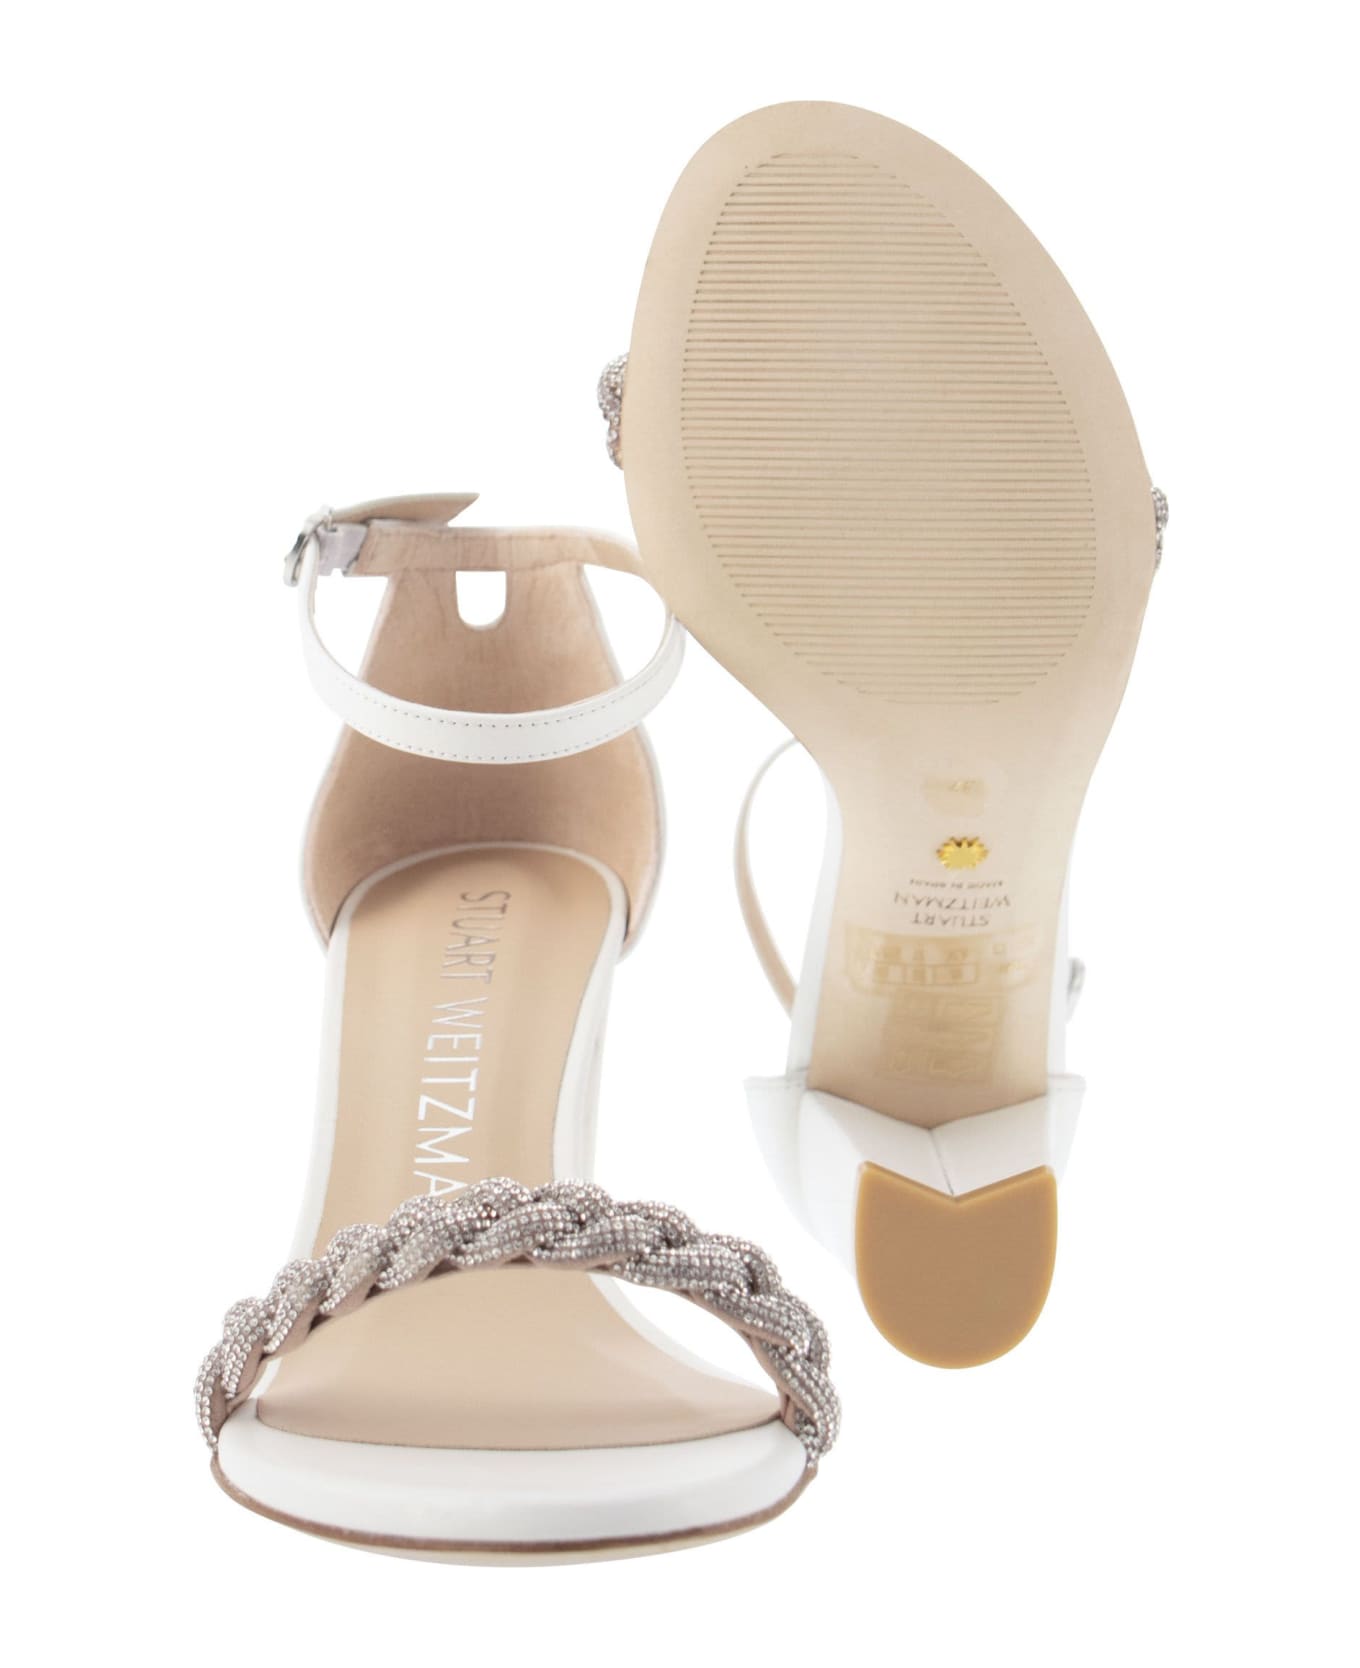 Stuart Weitzman Nearlynude Highshine - Open Sandal With Jewel - White